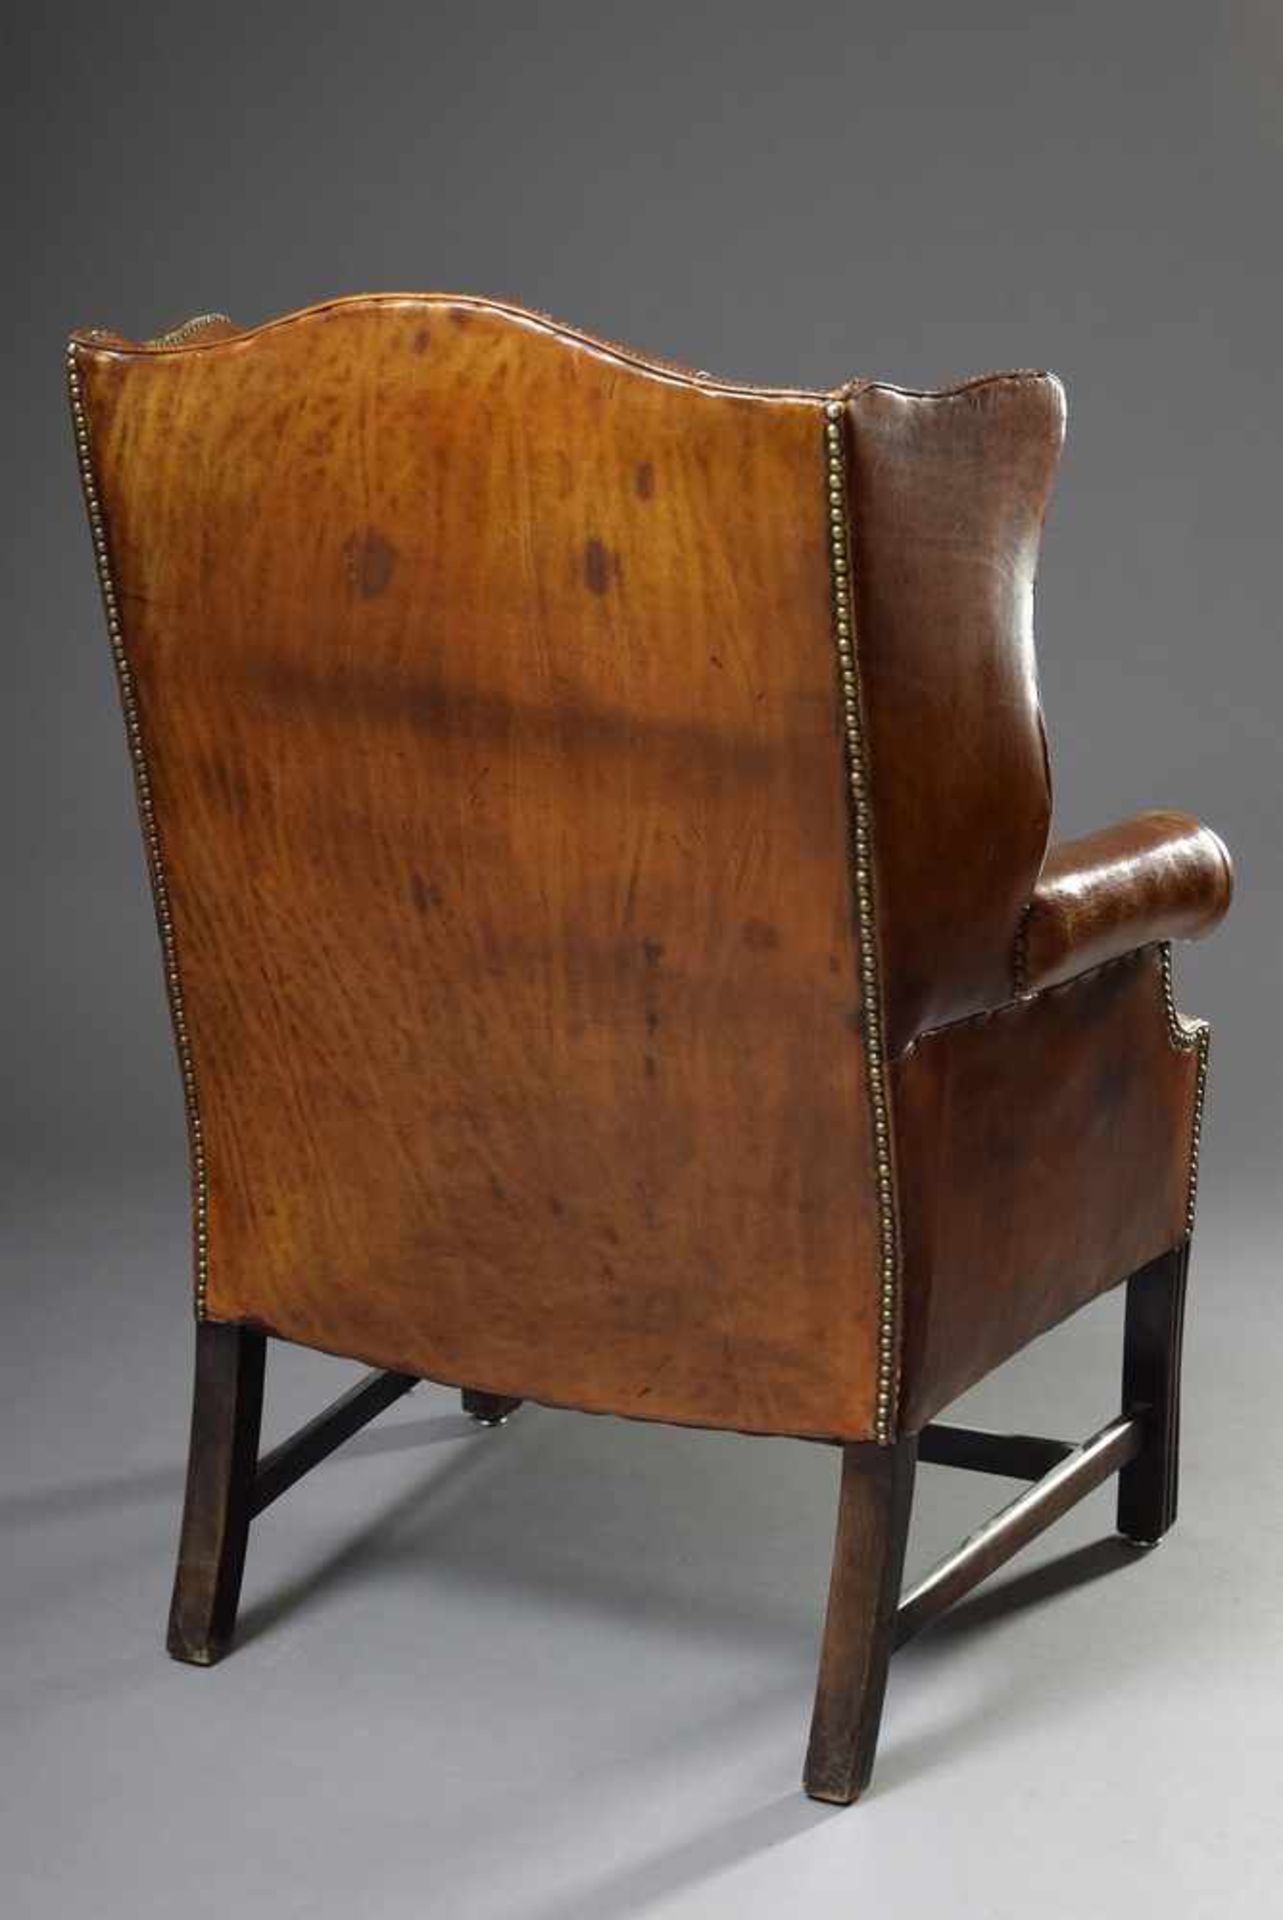 Chesterfield Ohrensessel mit brauen Lederbezug, H. 46/100cmChesterfield wing chair with brown - Bild 2 aus 4